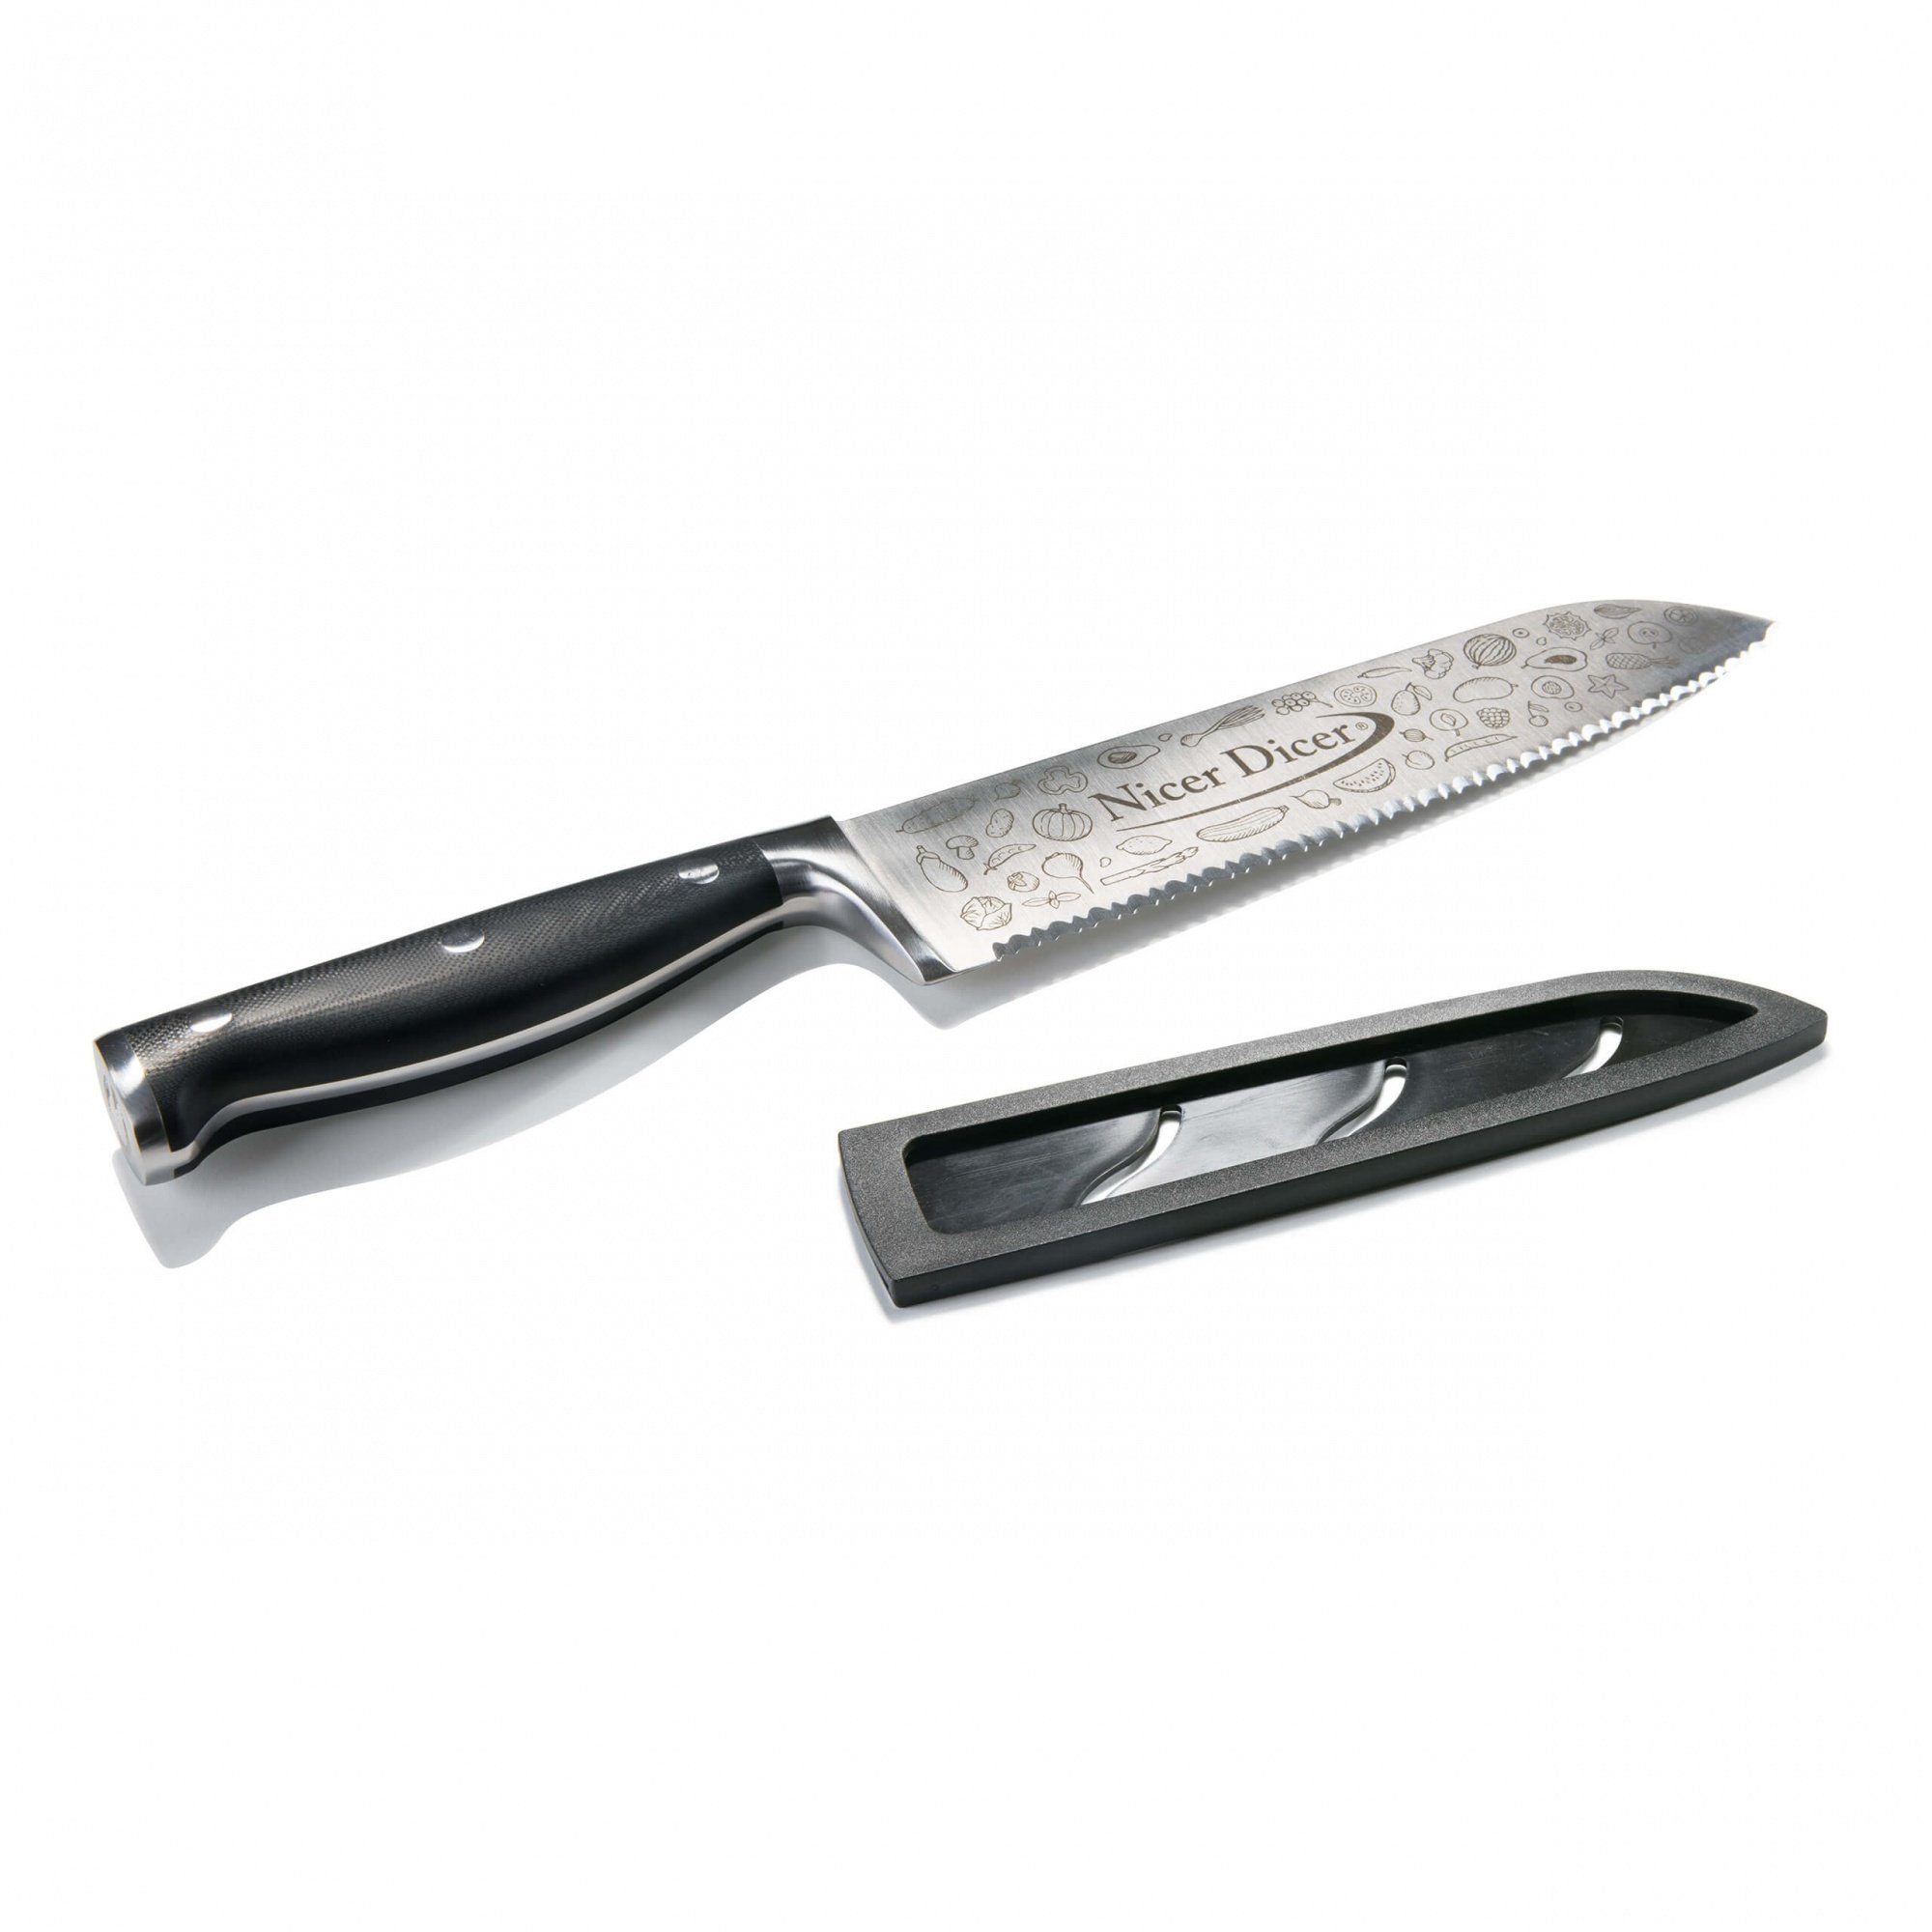 Genius Universalmesser Nicer Dicer Knife, scharfes Profi Messer aus Edelstahl mit Wellenschliff & Schutzhülle